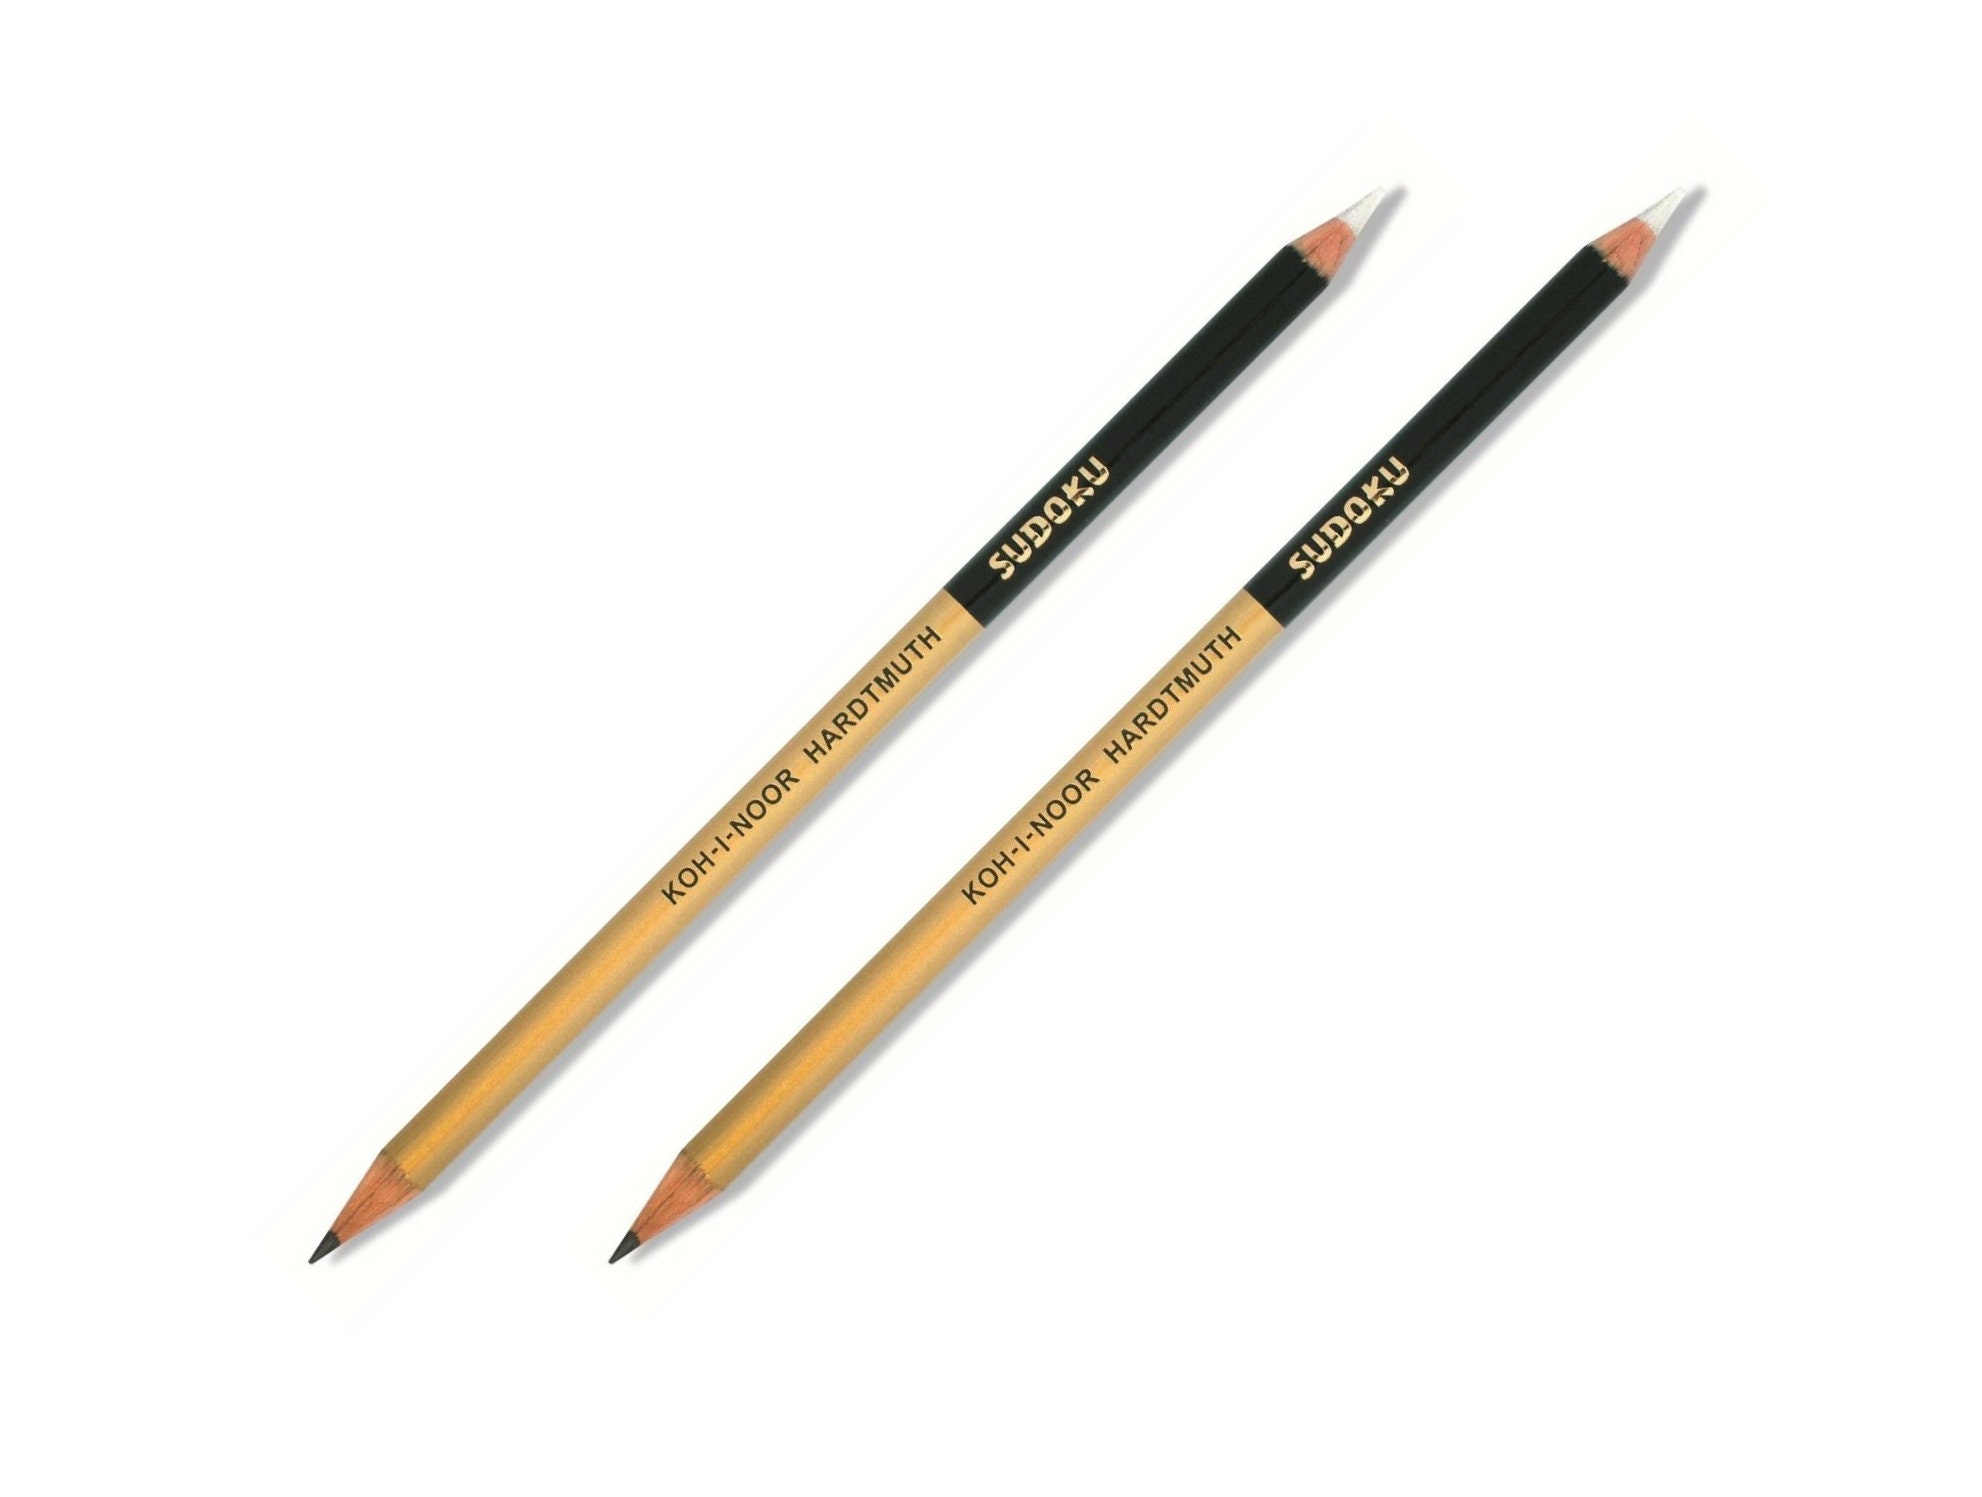 Gomme pour crayon graphite 0300060025 KD souple de Koh-I-Noor. 